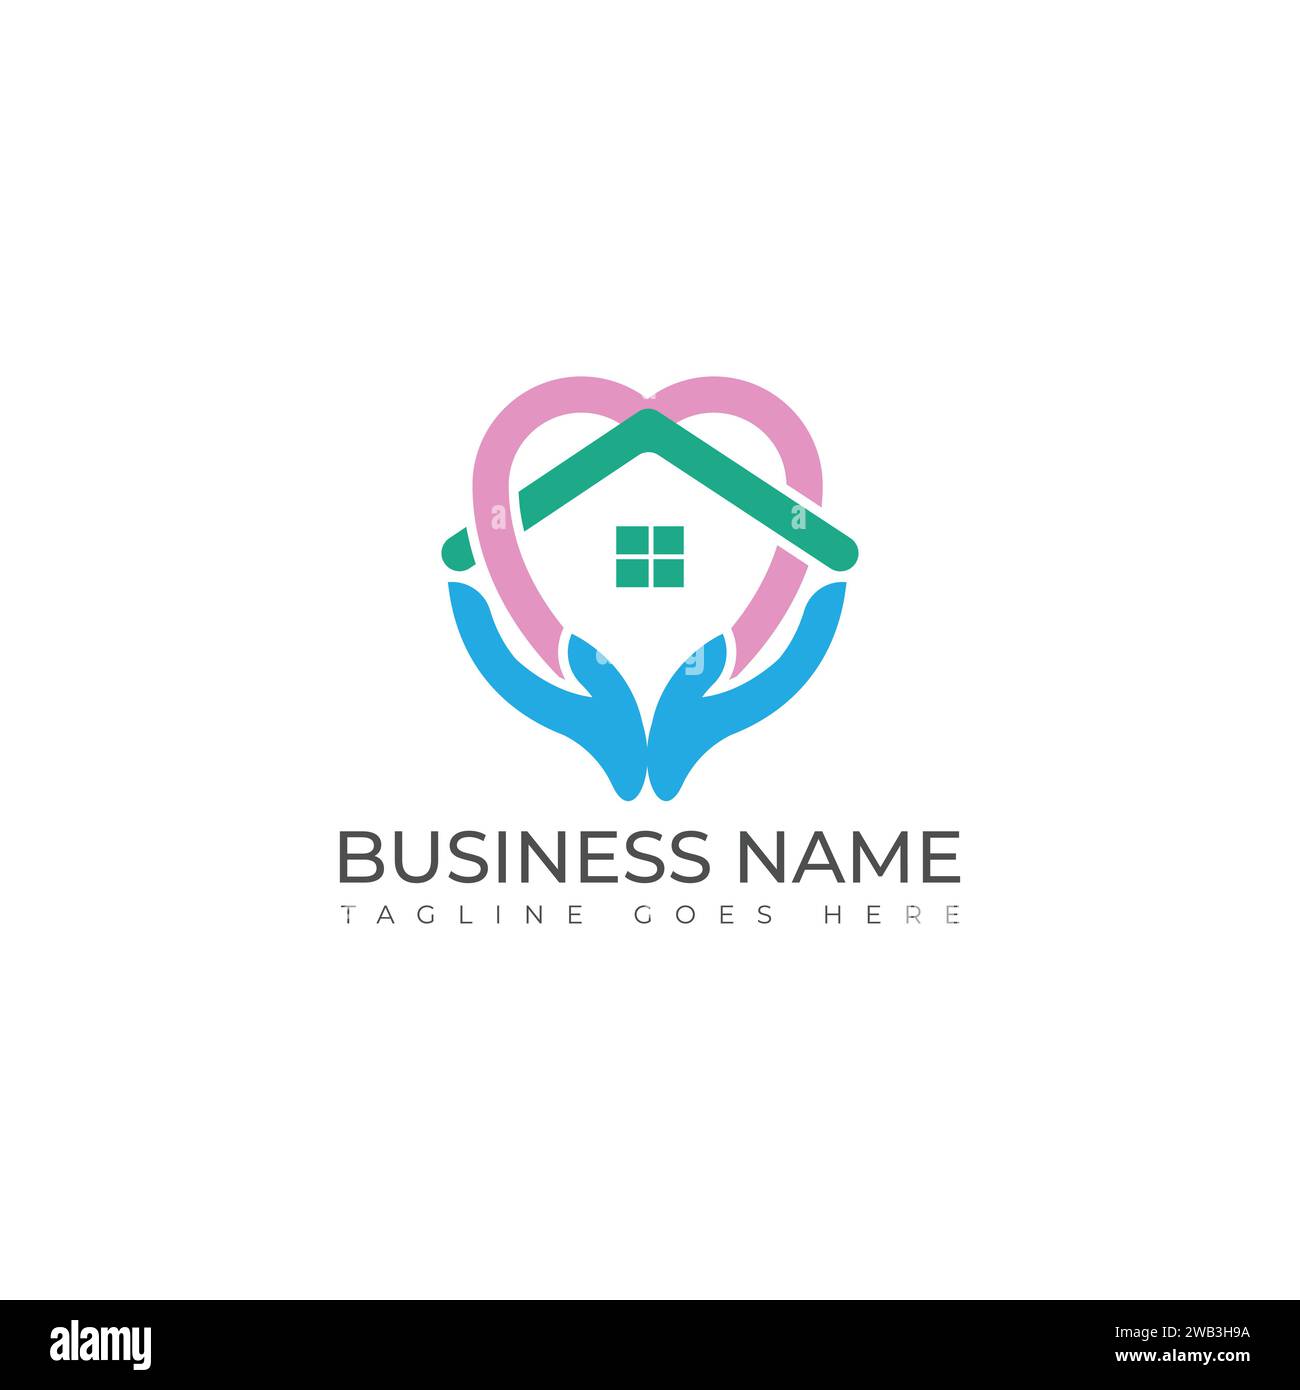 Modello di logo House Care e design del logo Medical House. Logo assistenza domiciliare, logo Stay at Home, modello di logo della casa di cura vettore Illustrazione Vettoriale